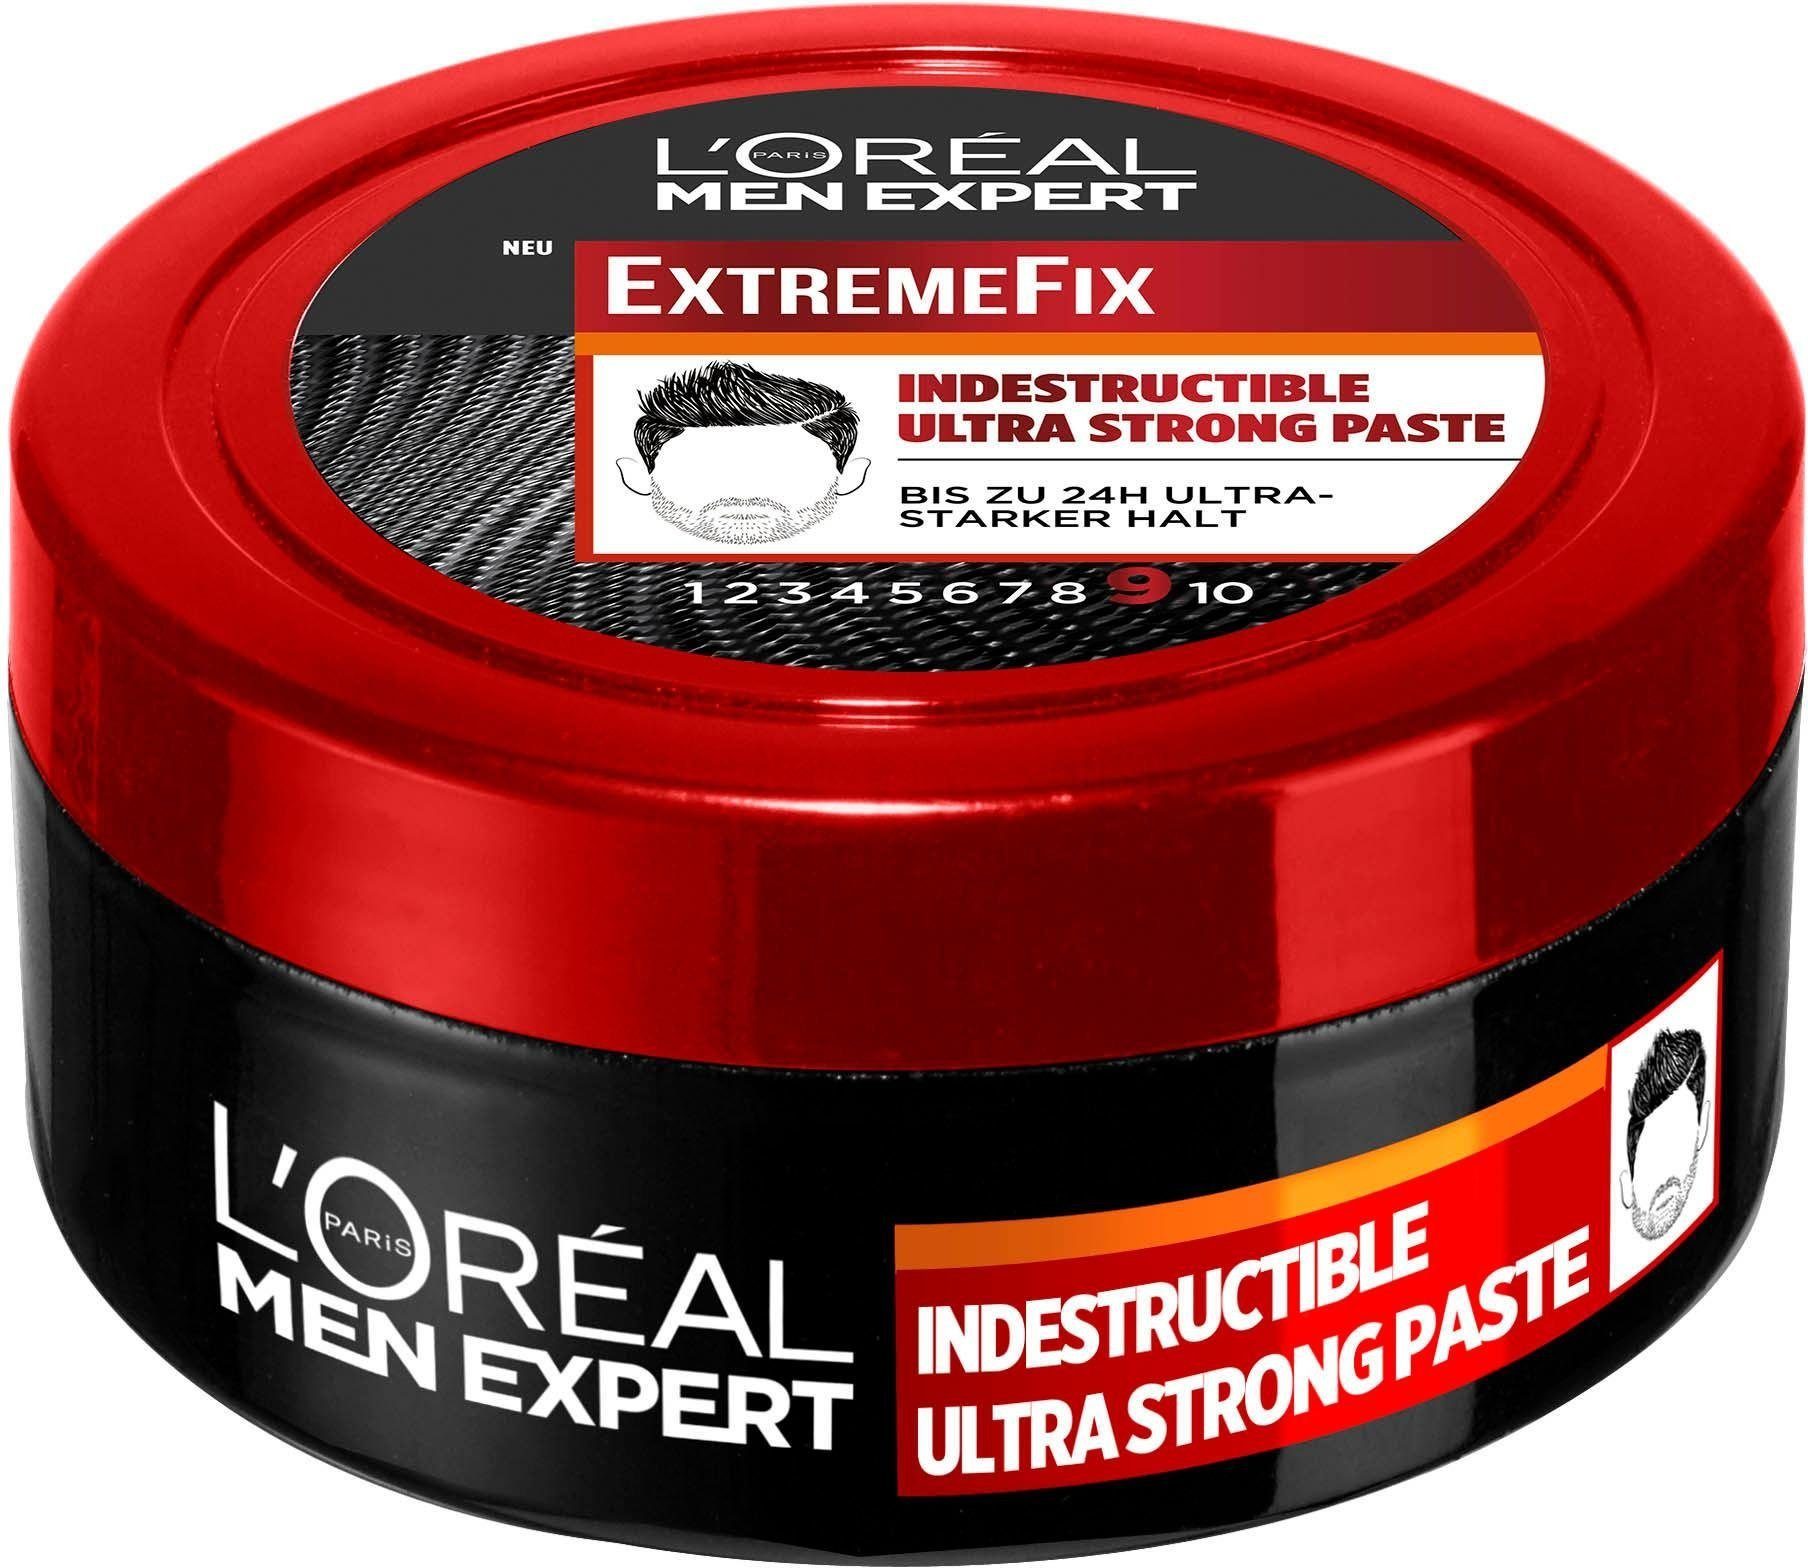 Paste PARIS EXPERT L'ORÉAL Indestructible Haarpomade Extreme MEN Fix